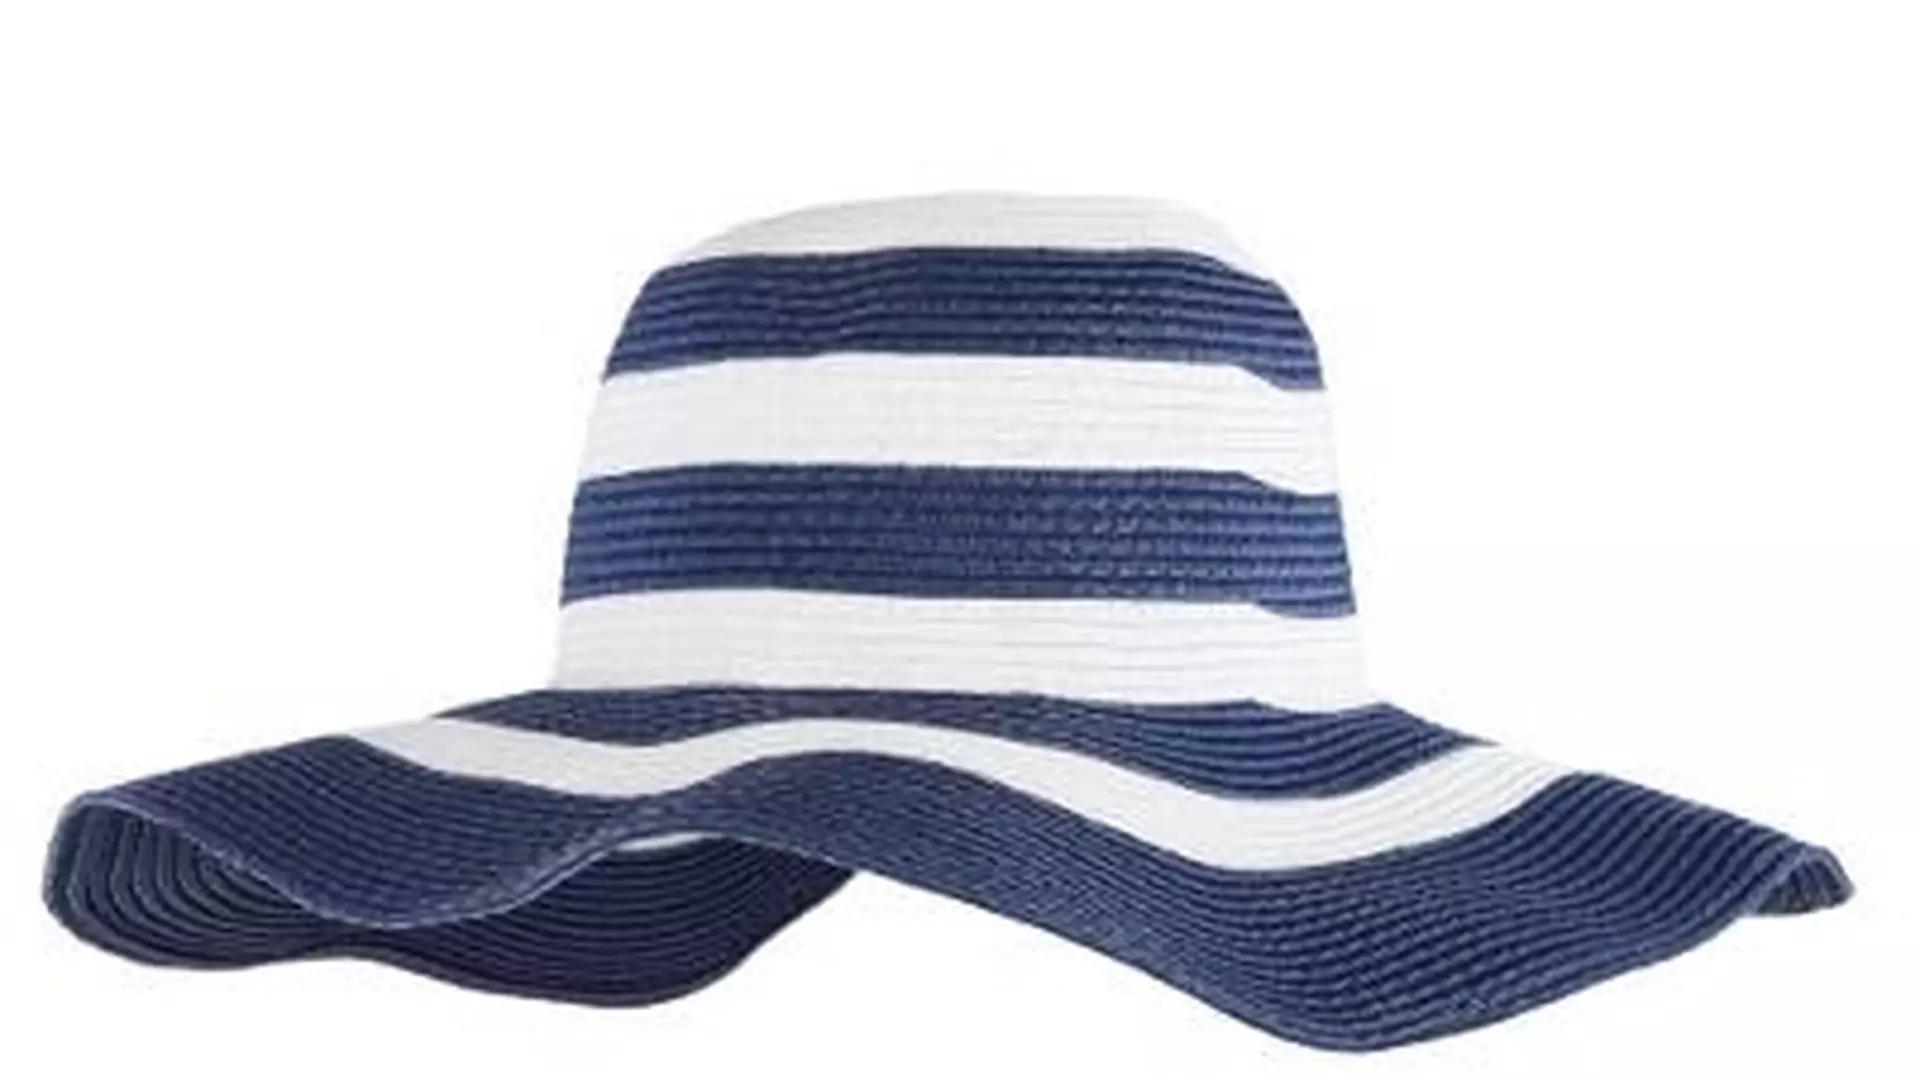 Modna ochrona przed słońcem: kapelusze na lato